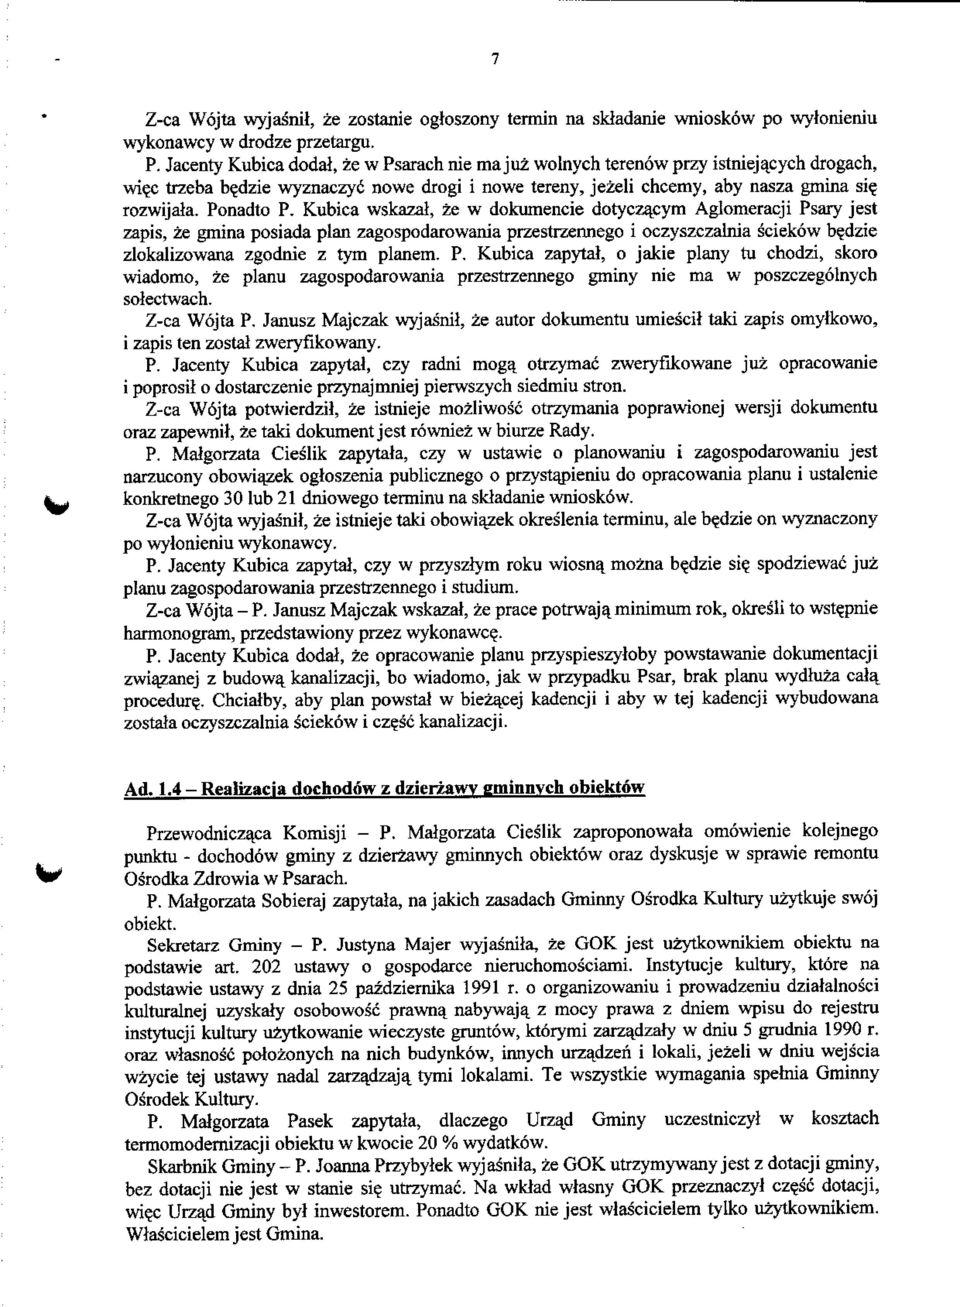 Ponadto P. Kubica wskazal, ze w dokumencie dotyczajsym Aglomeracji Psary jest zapis, ze gmina posiada plan zagospodarowania przestrzennego i oczyszczalnia sciekow be.